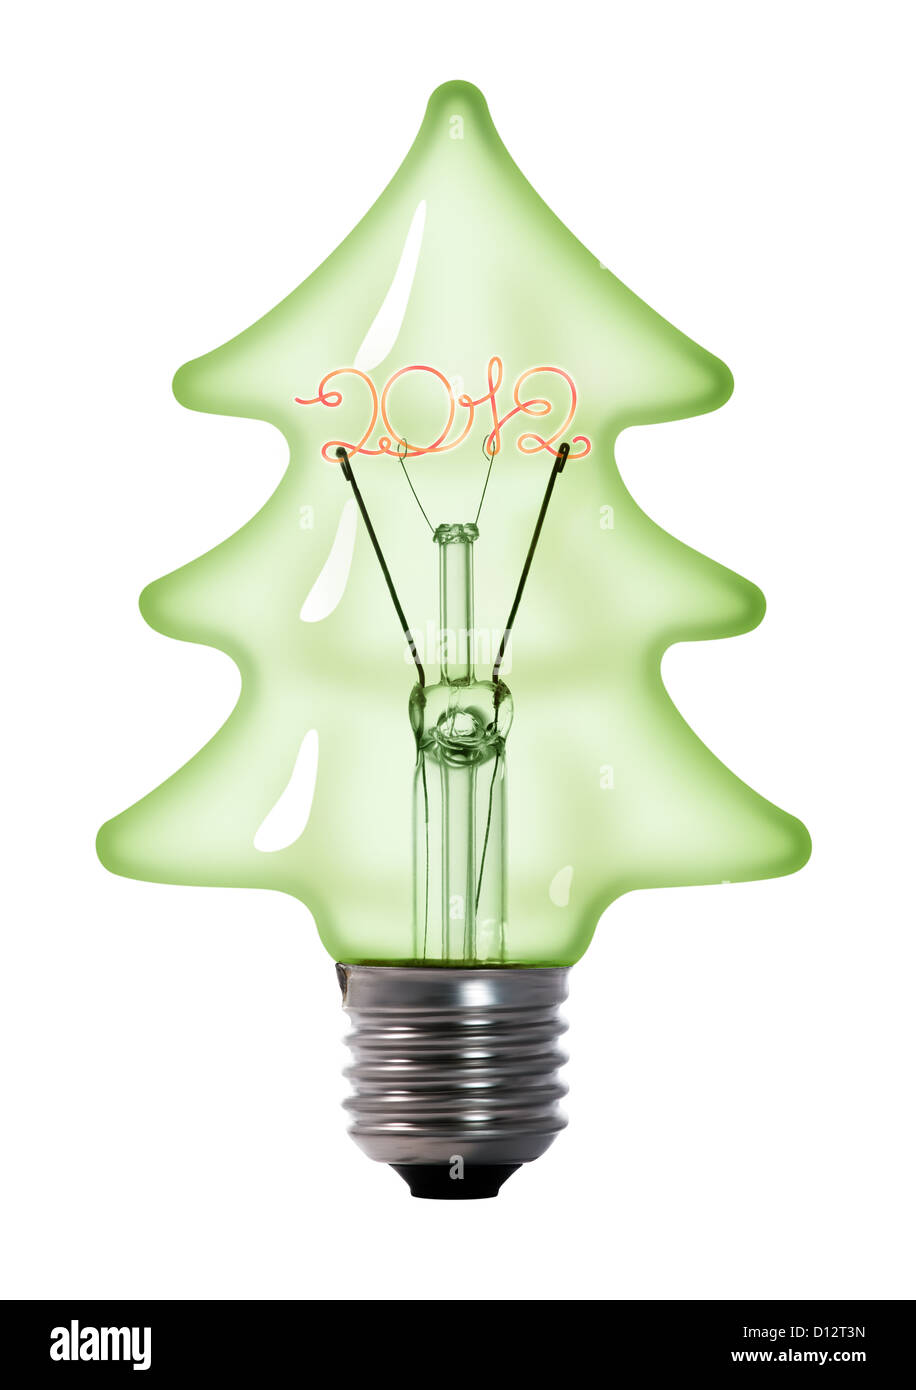 Arbre de Noël ampoule lampe tungstène sur fond blanc Banque D'Images